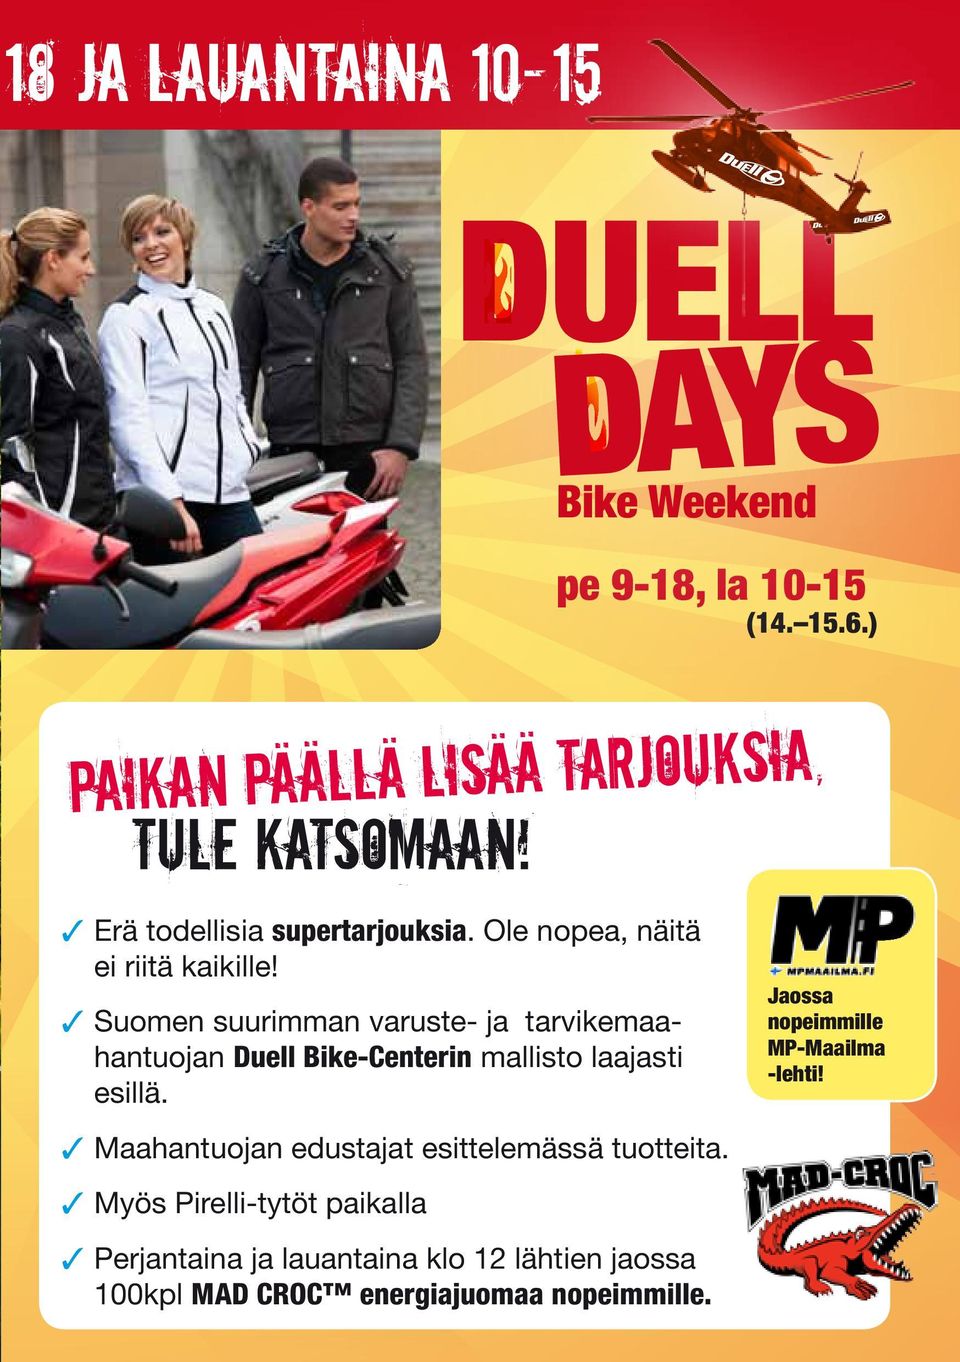 Suomen suurimman varuste- ja tarvikemaahantuojan Duell Bike-Centerin mallisto laajasti esillä.